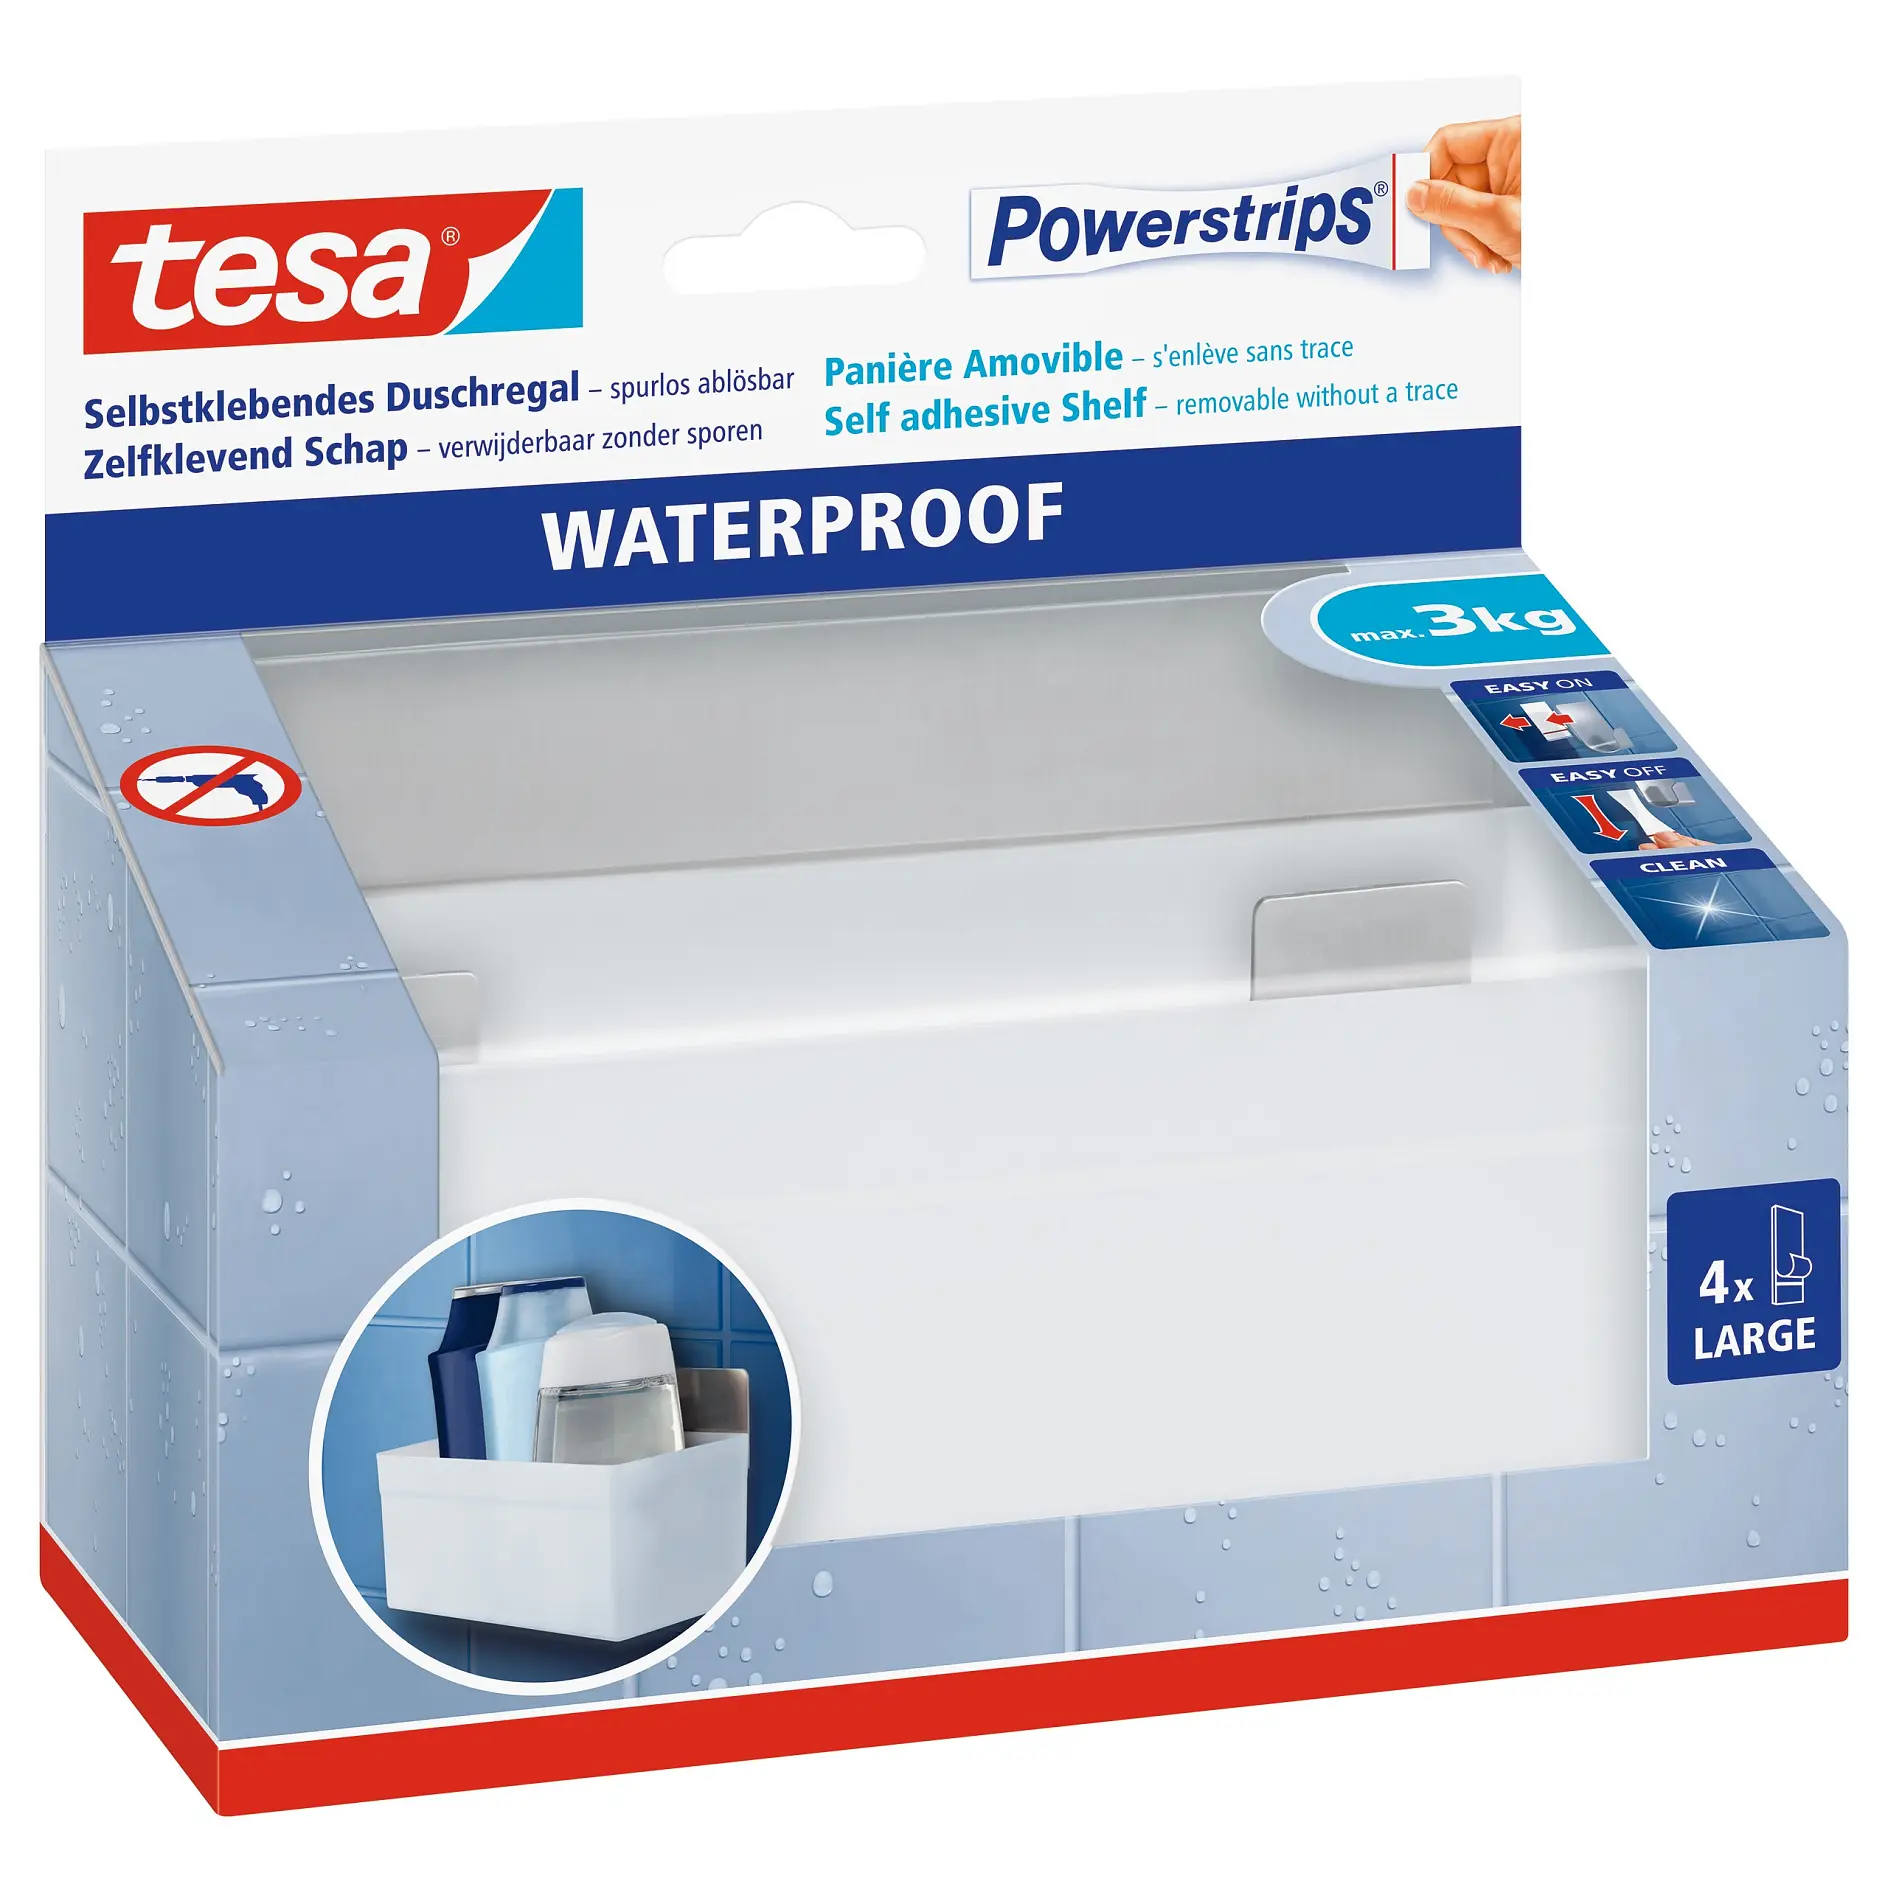 tesa Powerstrips waterproof shelf zoom